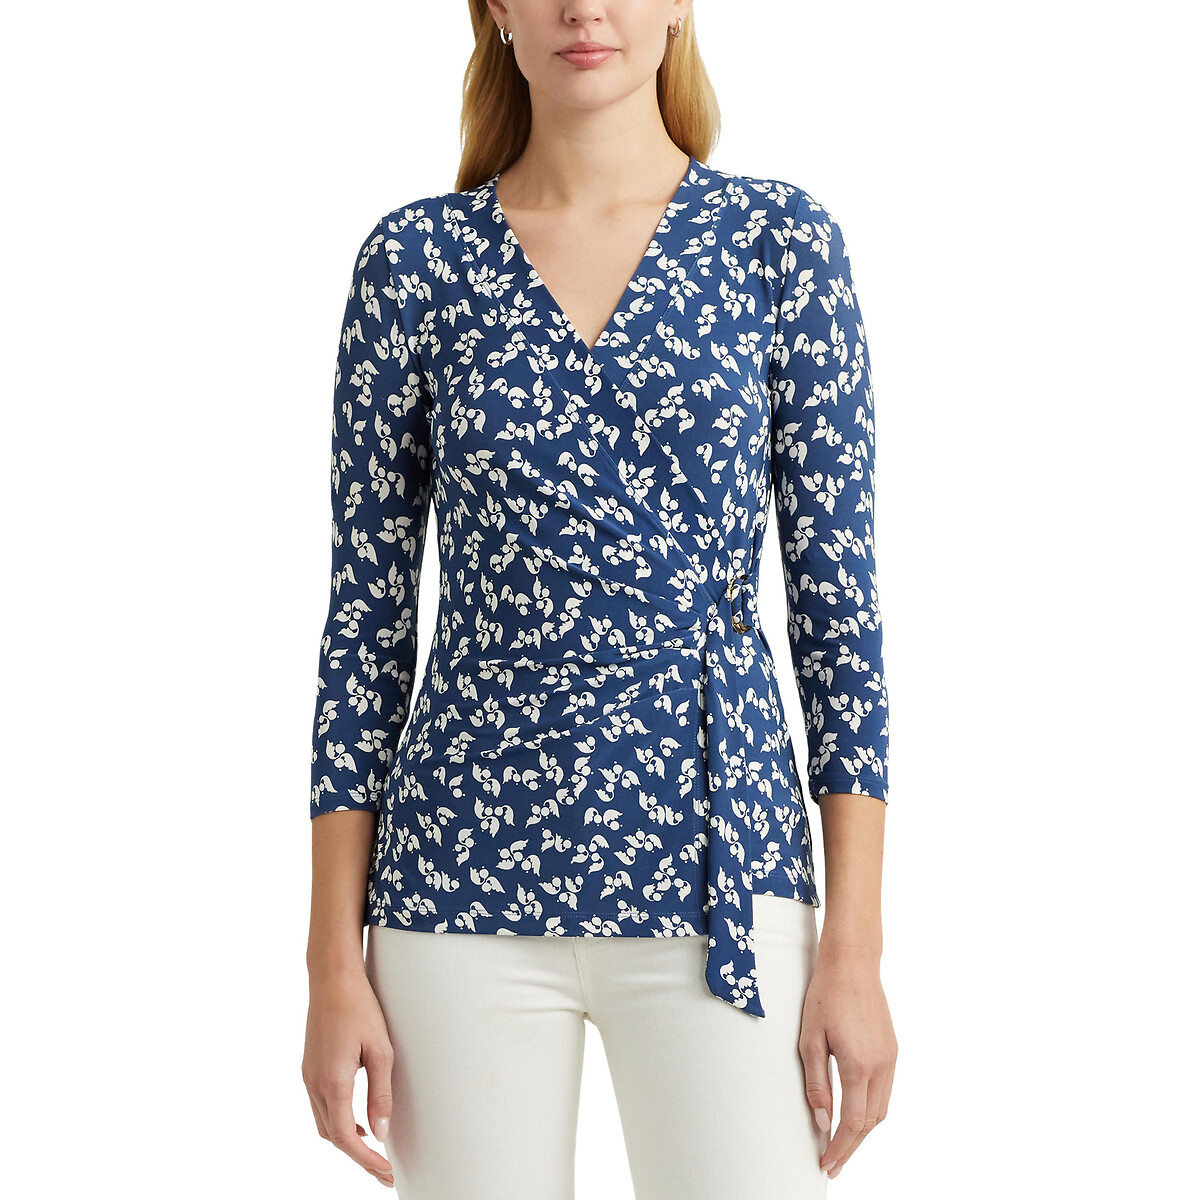 Блузка с запахом принтом и рукавами 34 JAINAB XL синий блузка с цветочным принтом и v образным вырезом xs зеленый